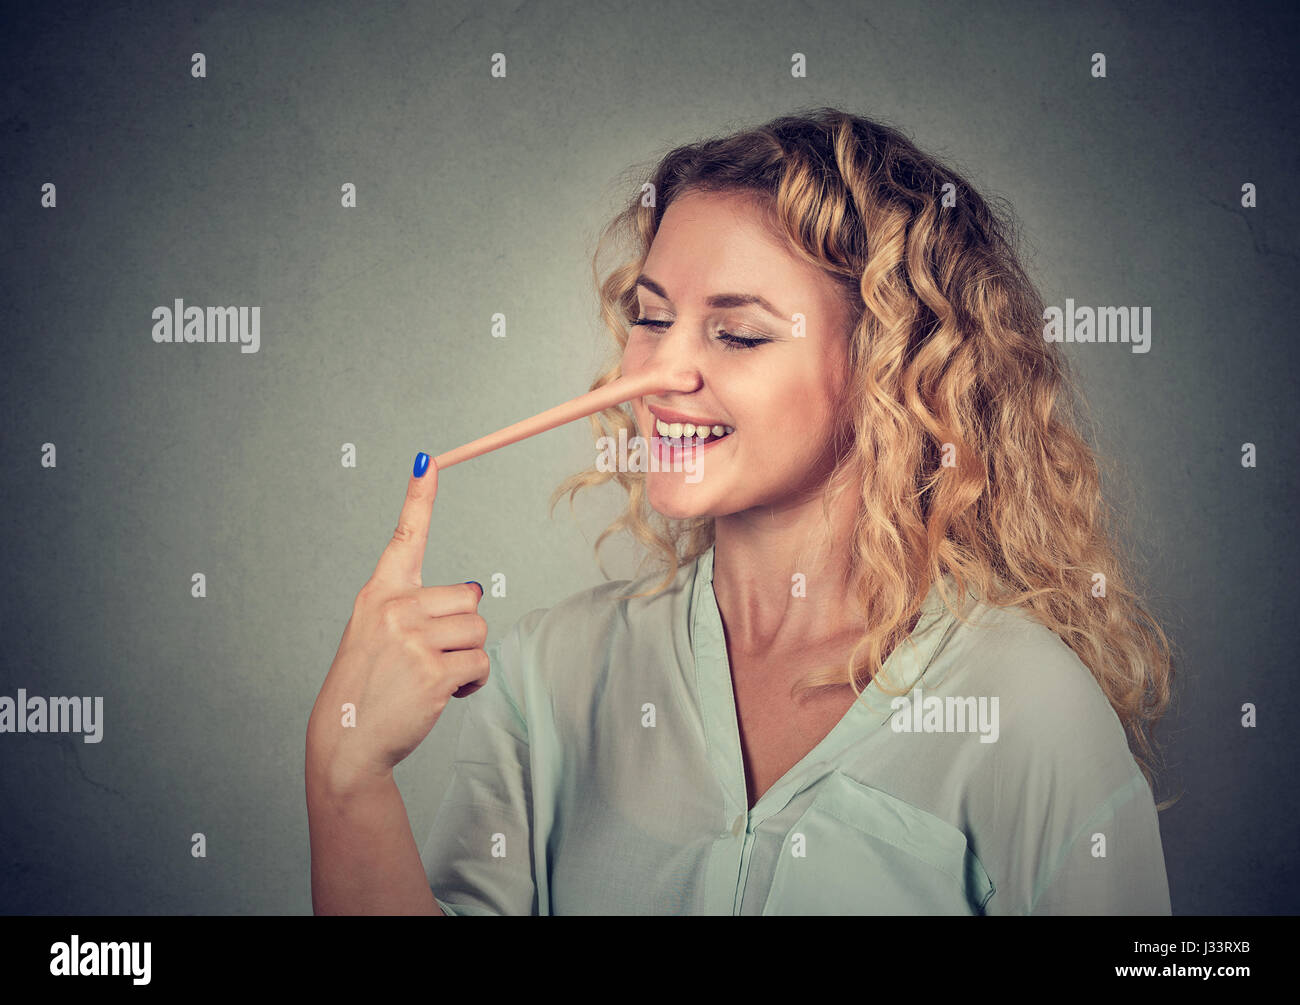 Frau mit langen Nase auf graue Wand Hintergrund isoliert. Lügner-Konzept. Menschlichen Gesichtsausdruck, Emotionen, Gefühle Stockfoto